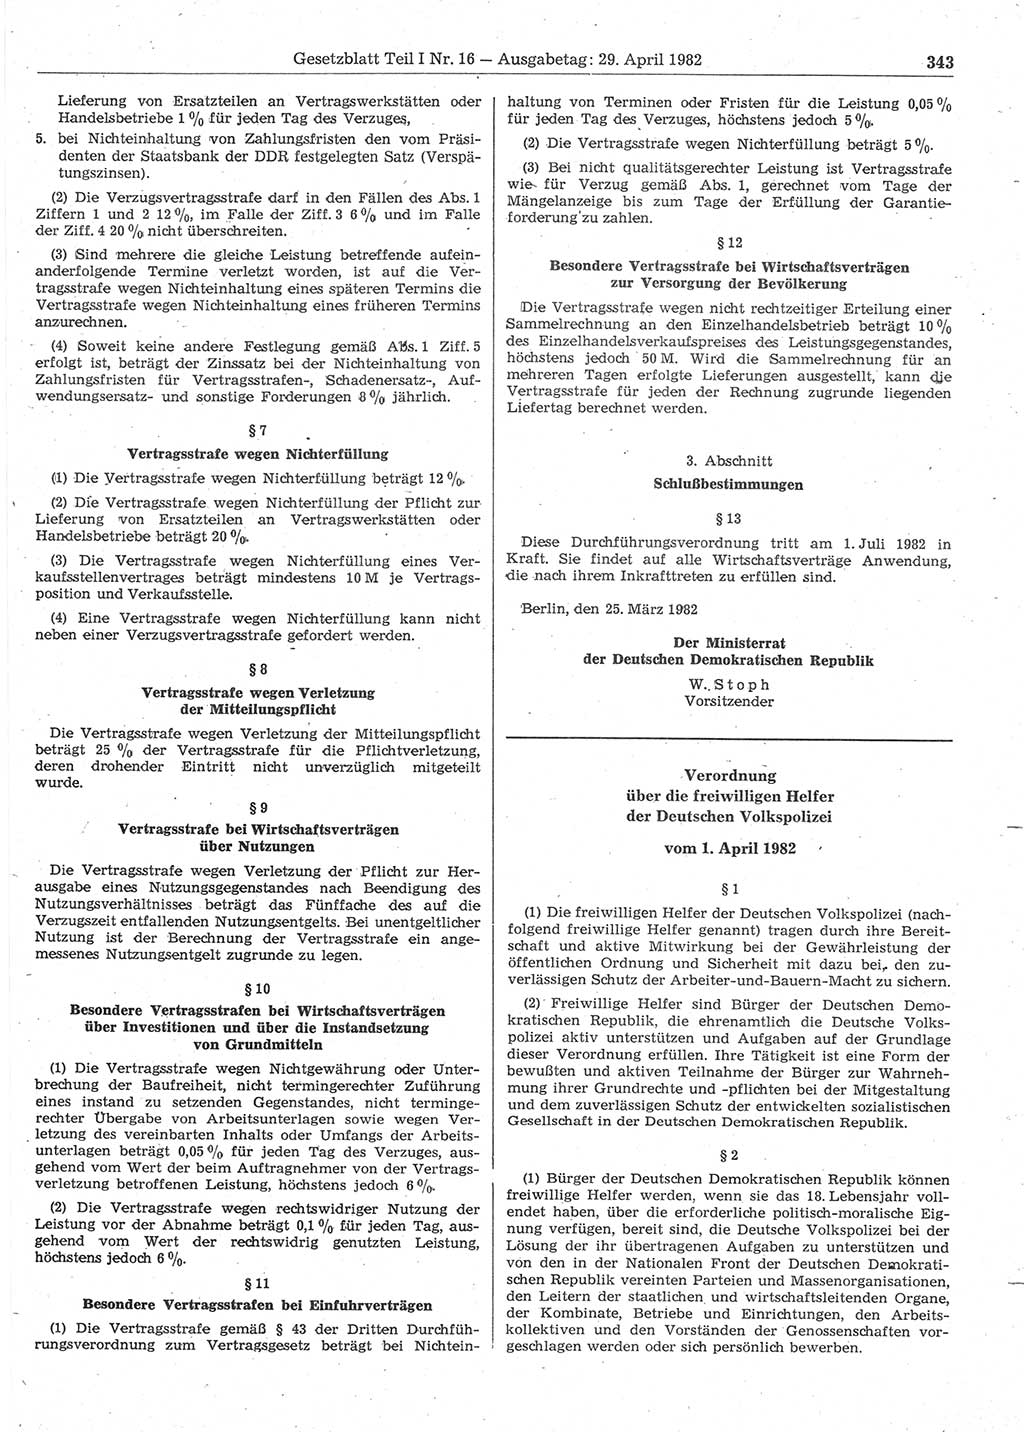 Gesetzblatt (GBl.) der Deutschen Demokratischen Republik (DDR) Teil Ⅰ 1982, Seite 343 (GBl. DDR Ⅰ 1982, S. 343)